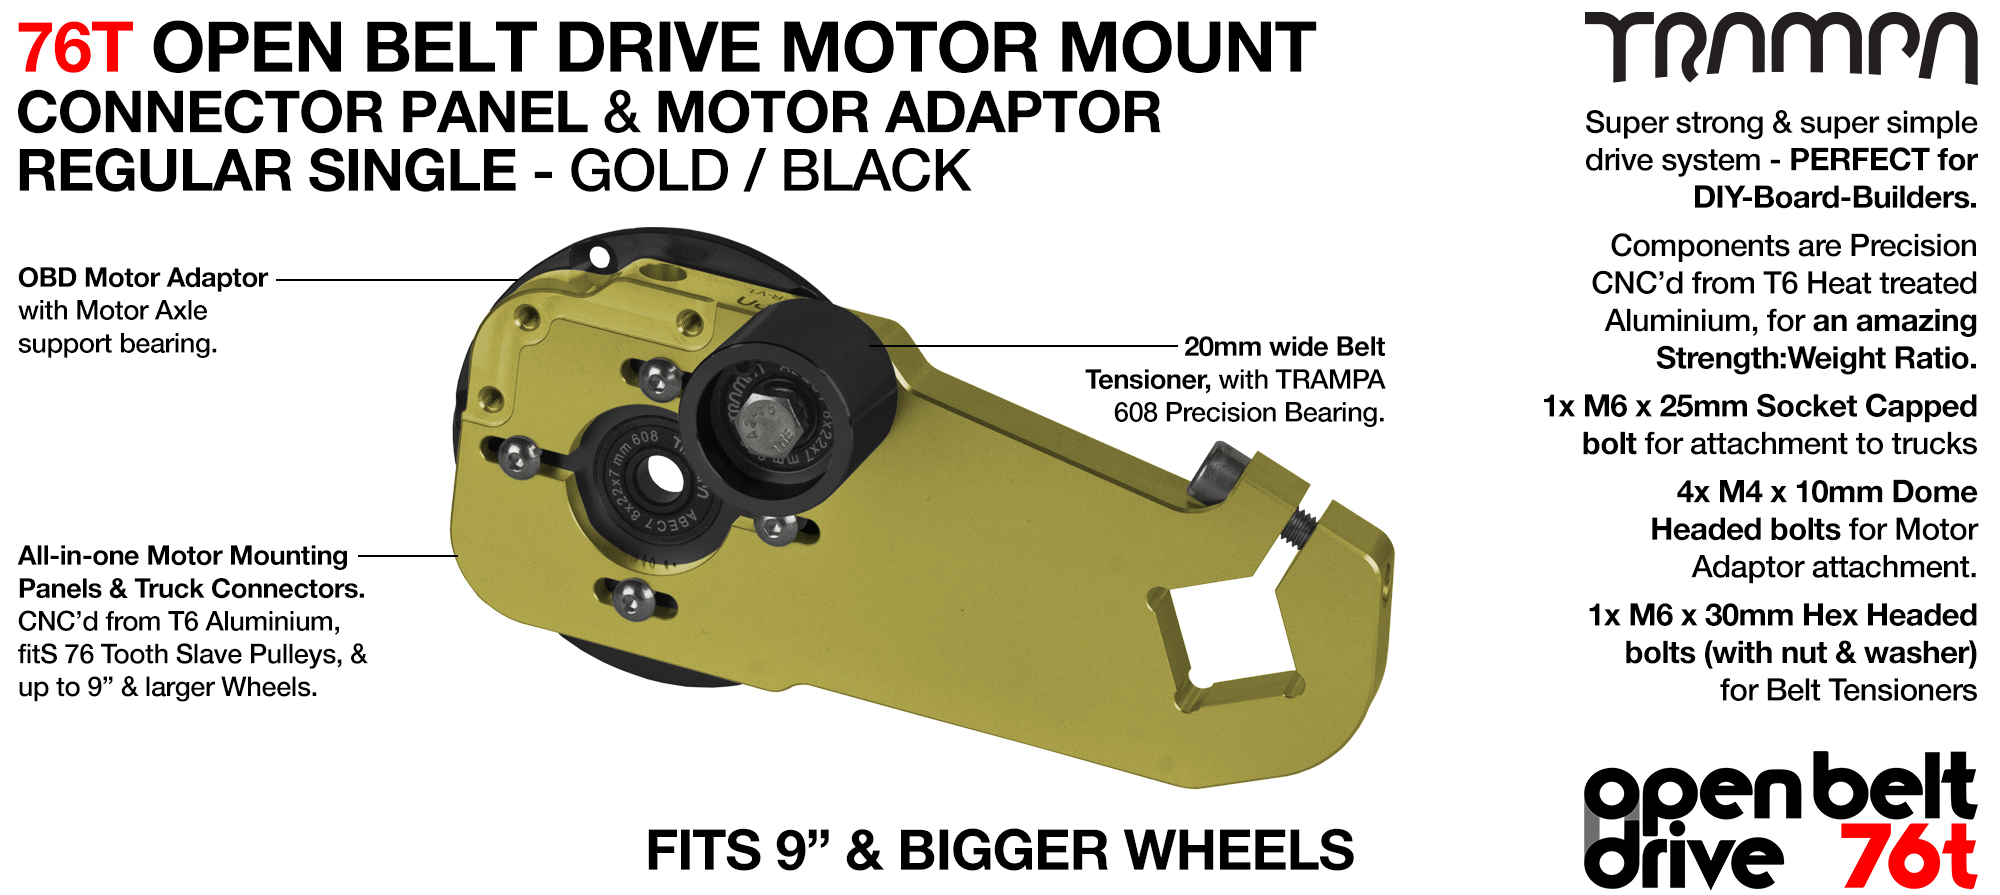 76T Open Belt Drive Motor Mount & Motor Adaptor - SINGLE GOLD